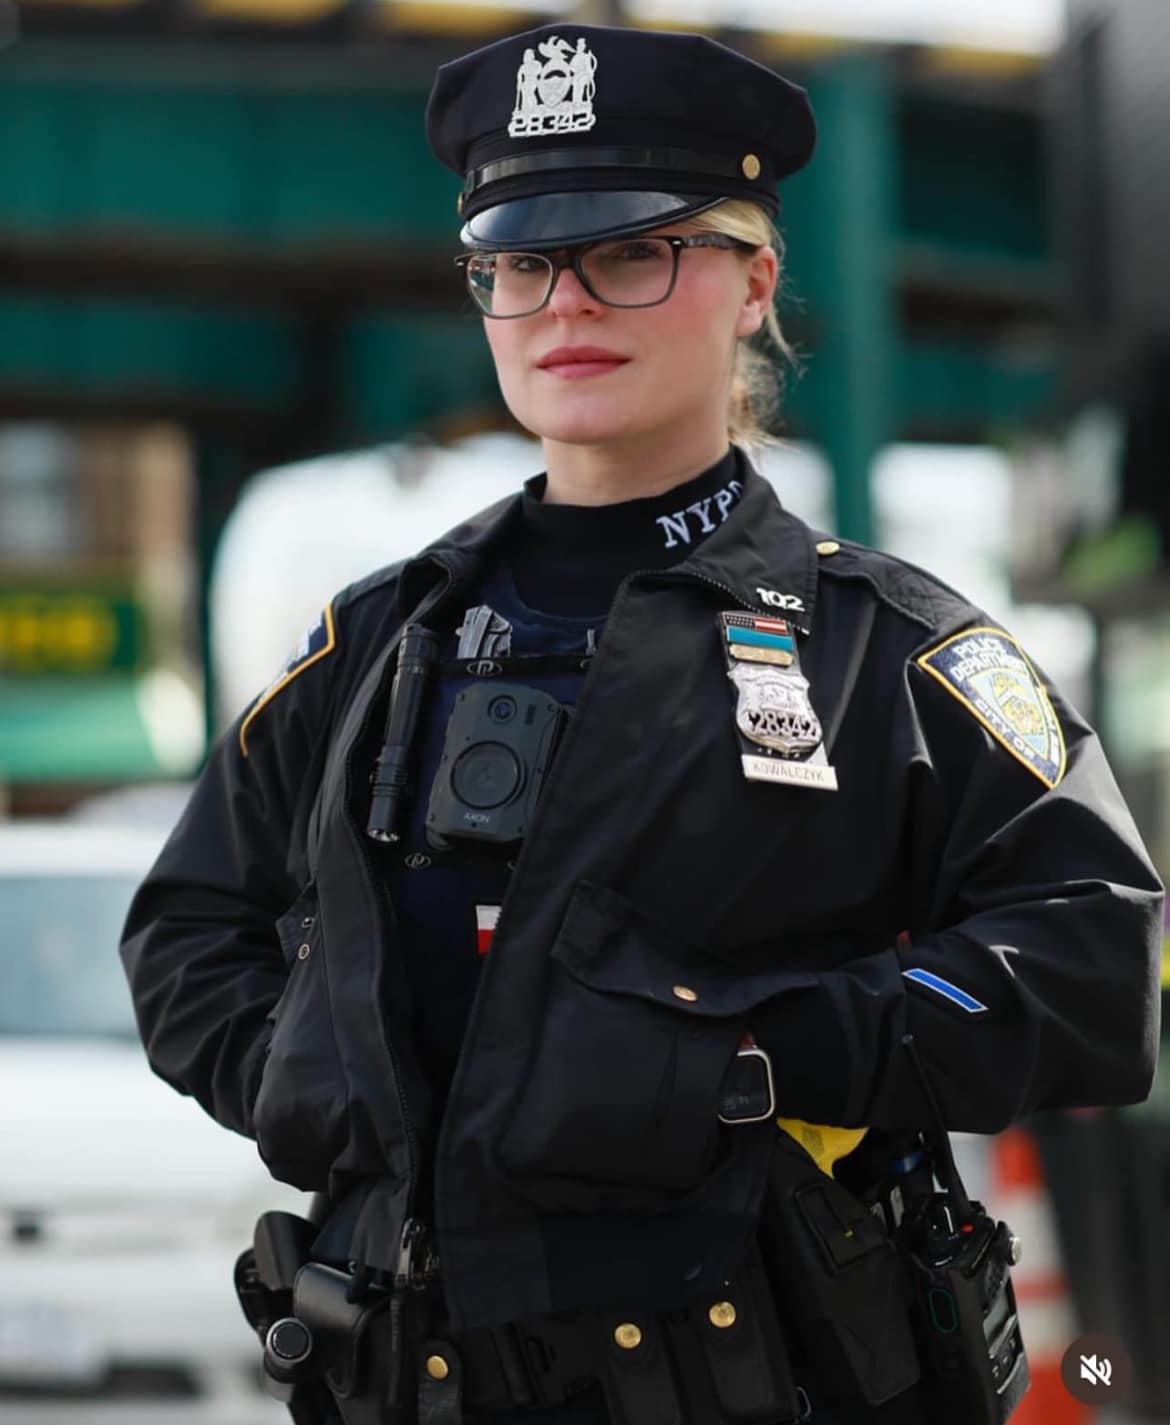 Officer Emilia Rennhack | Source: Facebook / Danamarie Landolfi